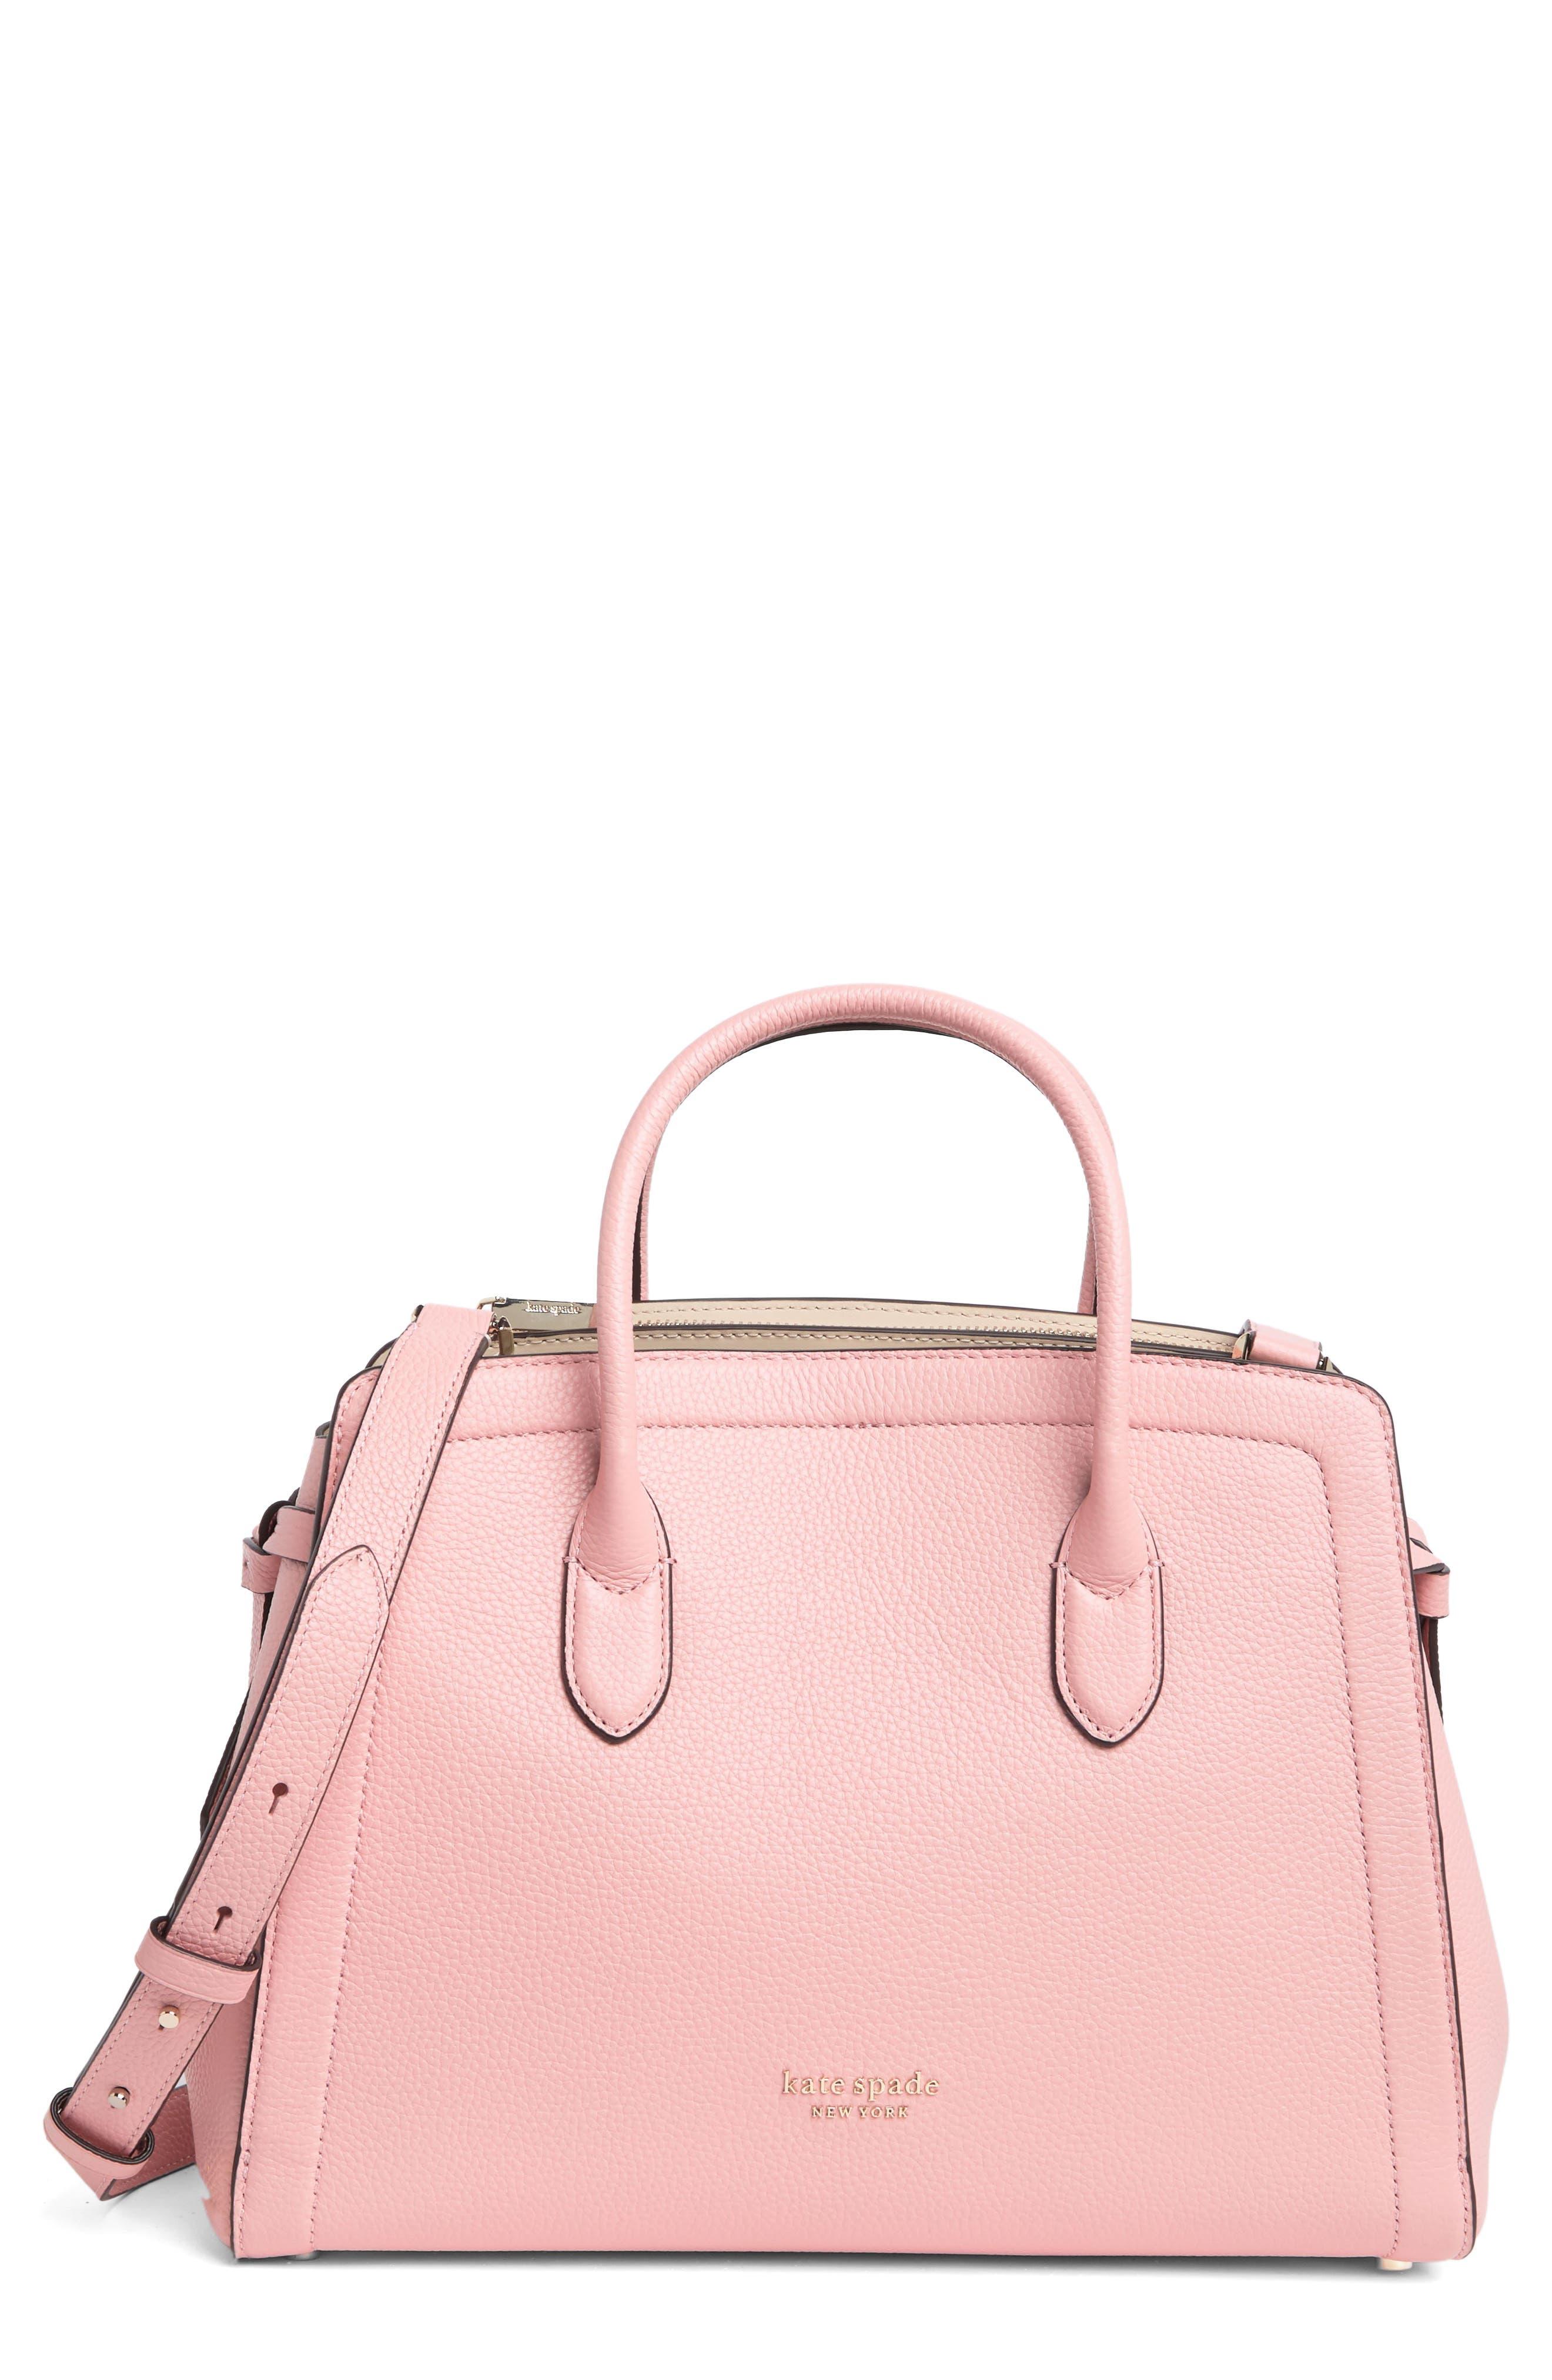 Coral Love Handbag – Siah Swag Bags